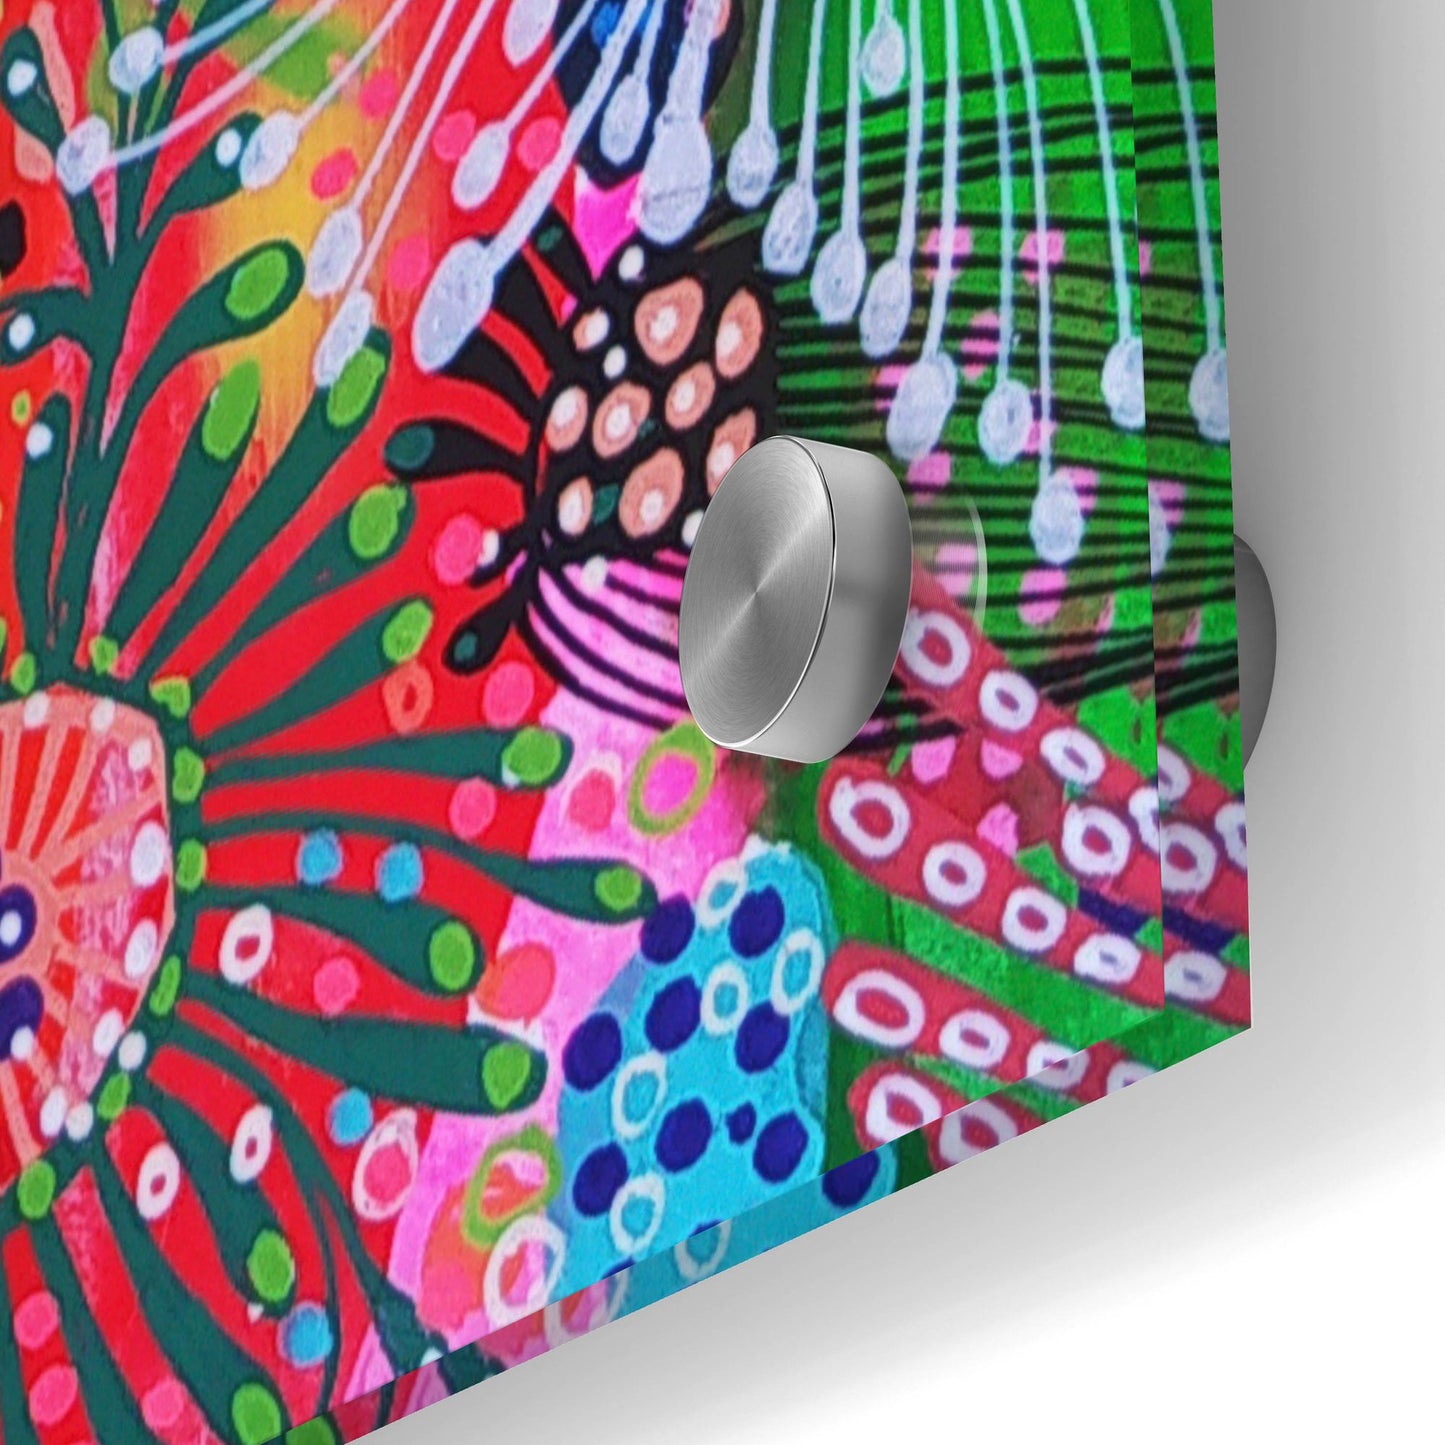 Epic Art 'Color Block2 by Noemi Ibarz, Acrylic Glass Wall Art,24x36